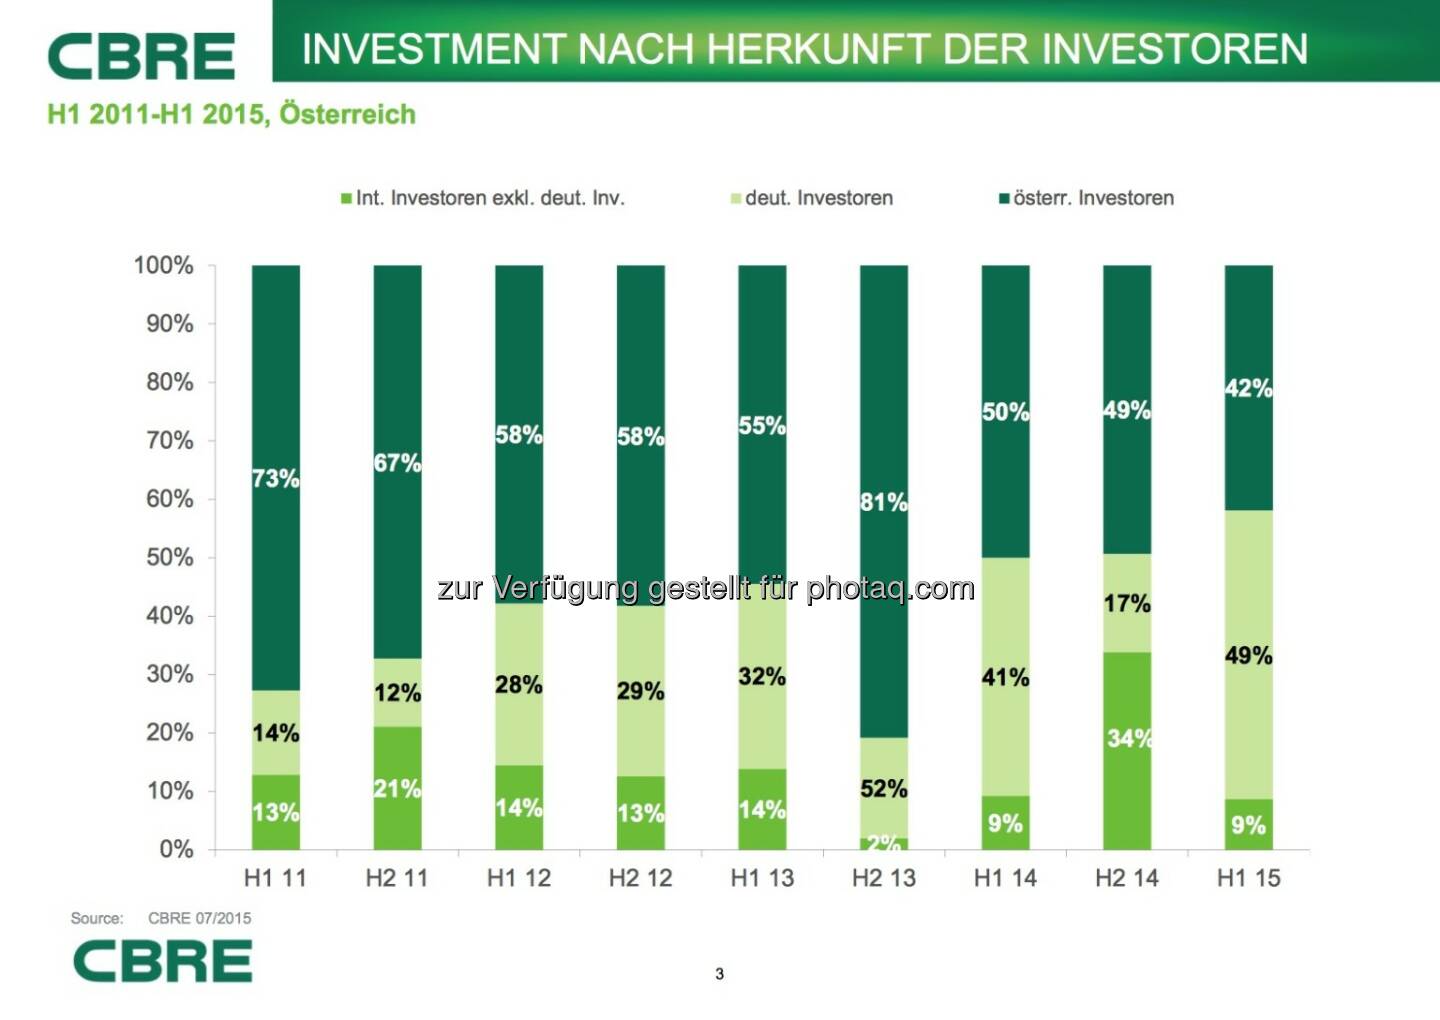 Cbre:  Investment nach Herkunft der Investoren